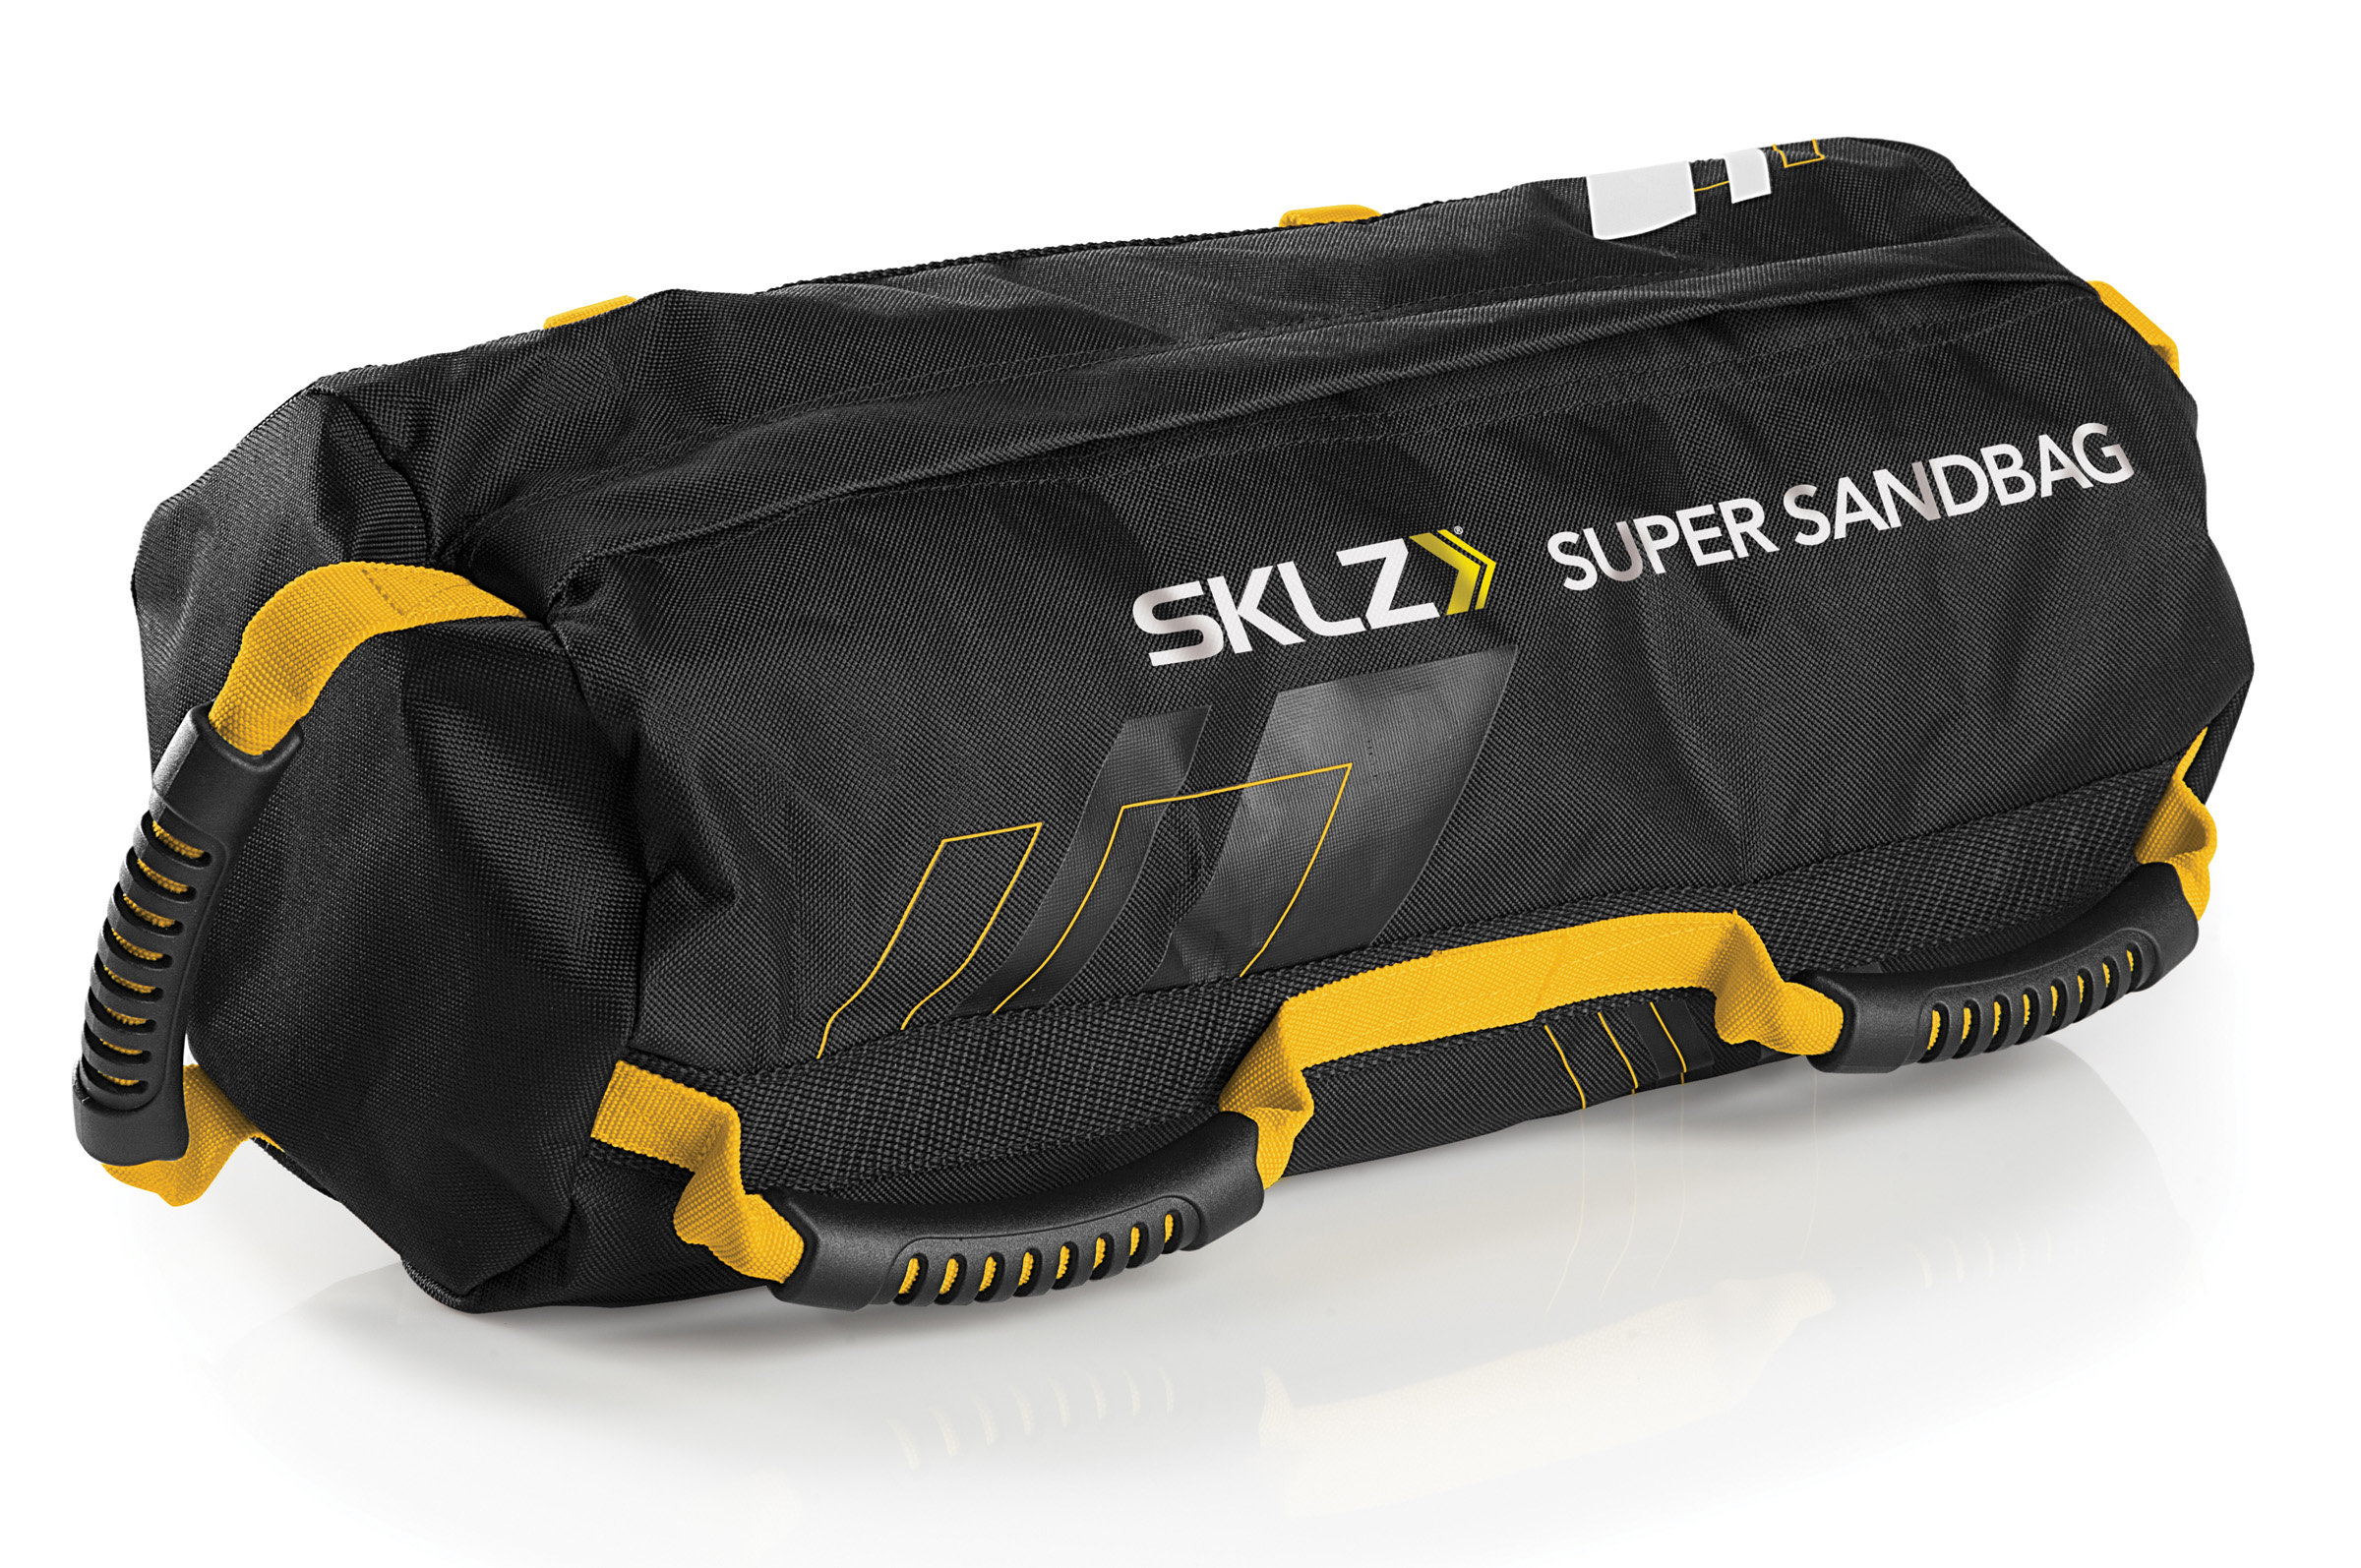 Simple Super Sandbag Workout for Gym